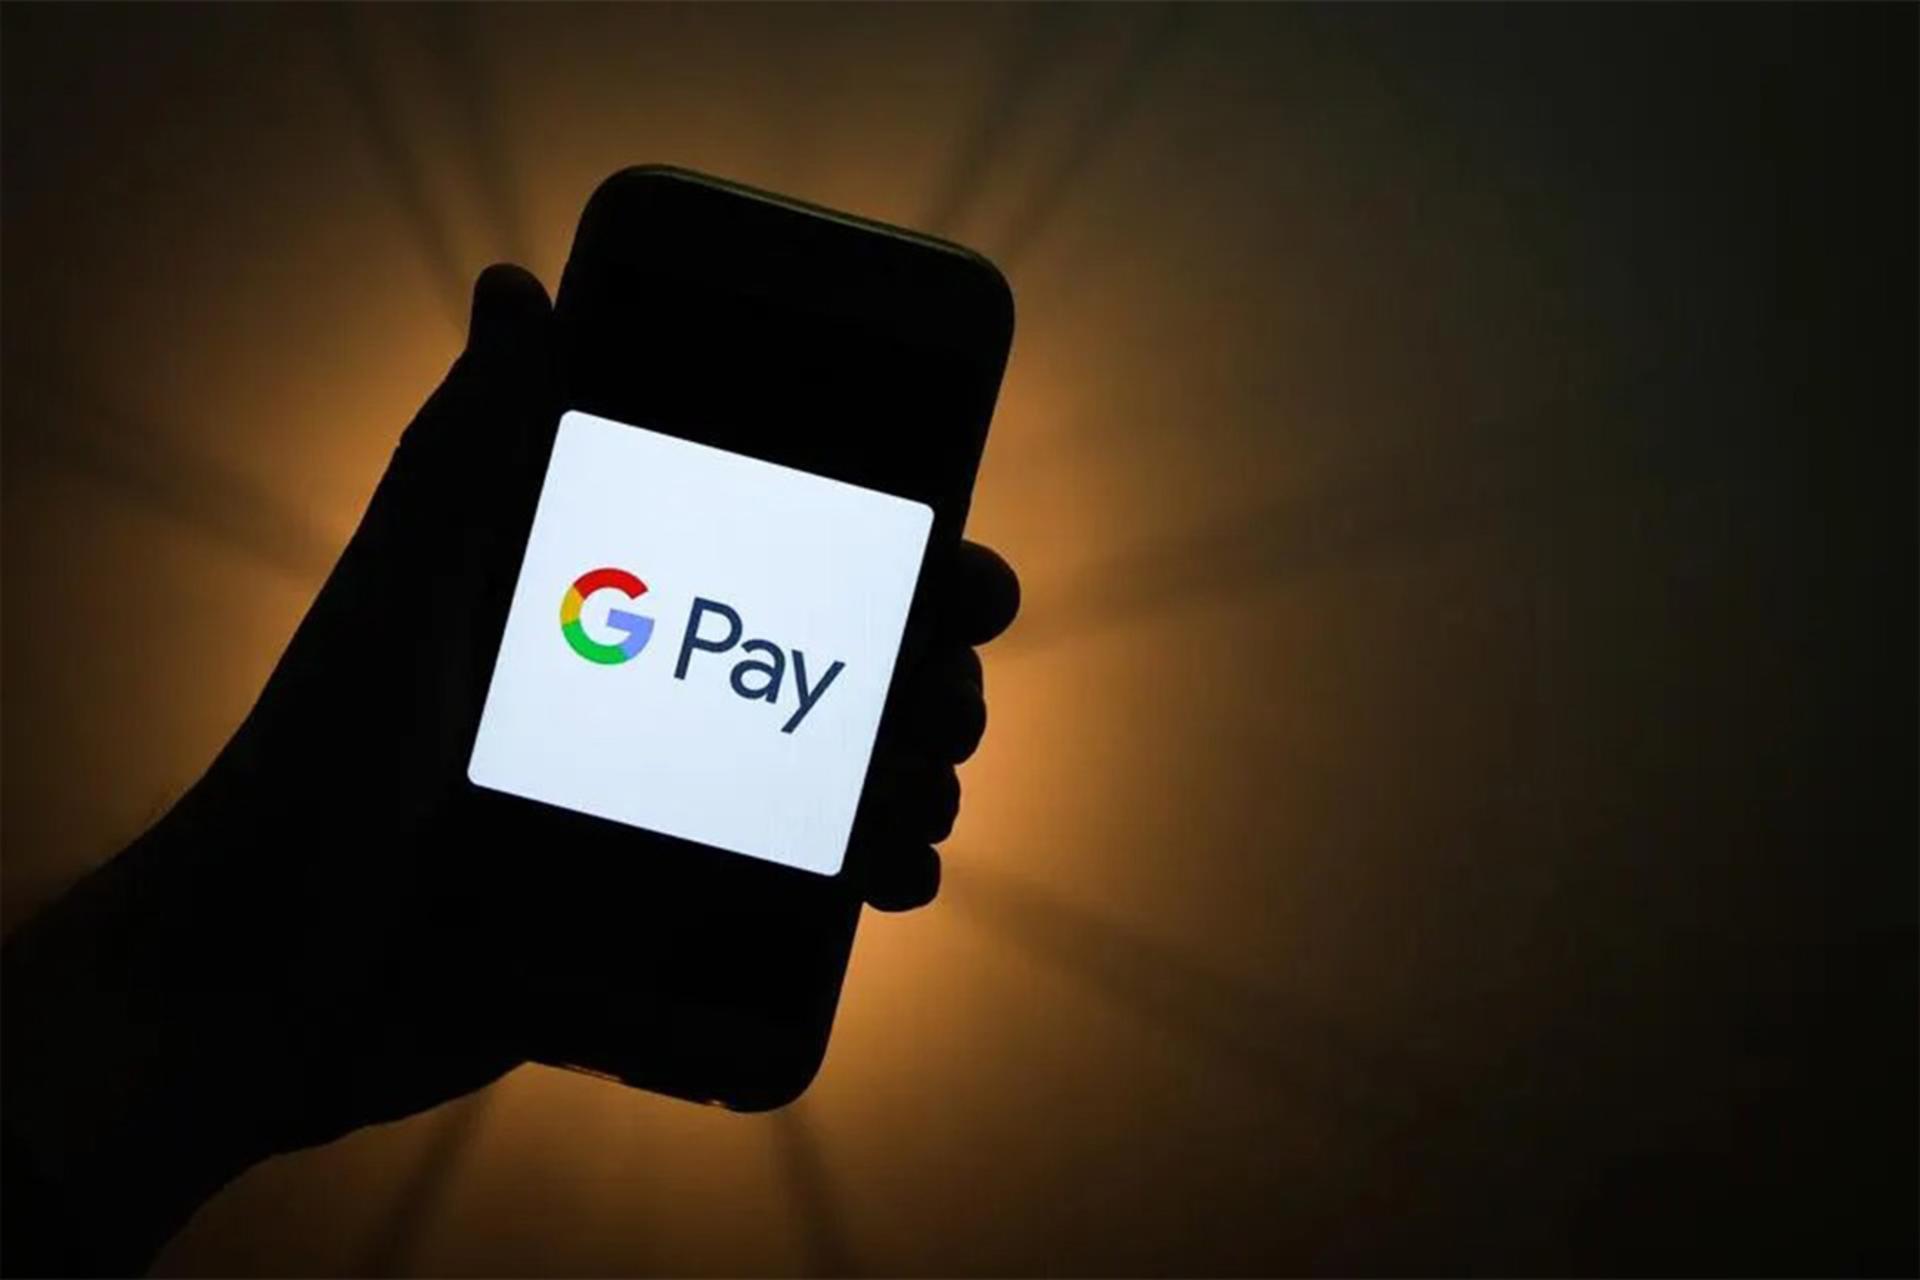 لوگوی اپلیکیشن گوگل پی / Google Pay logo روی نمایشگر گوشی